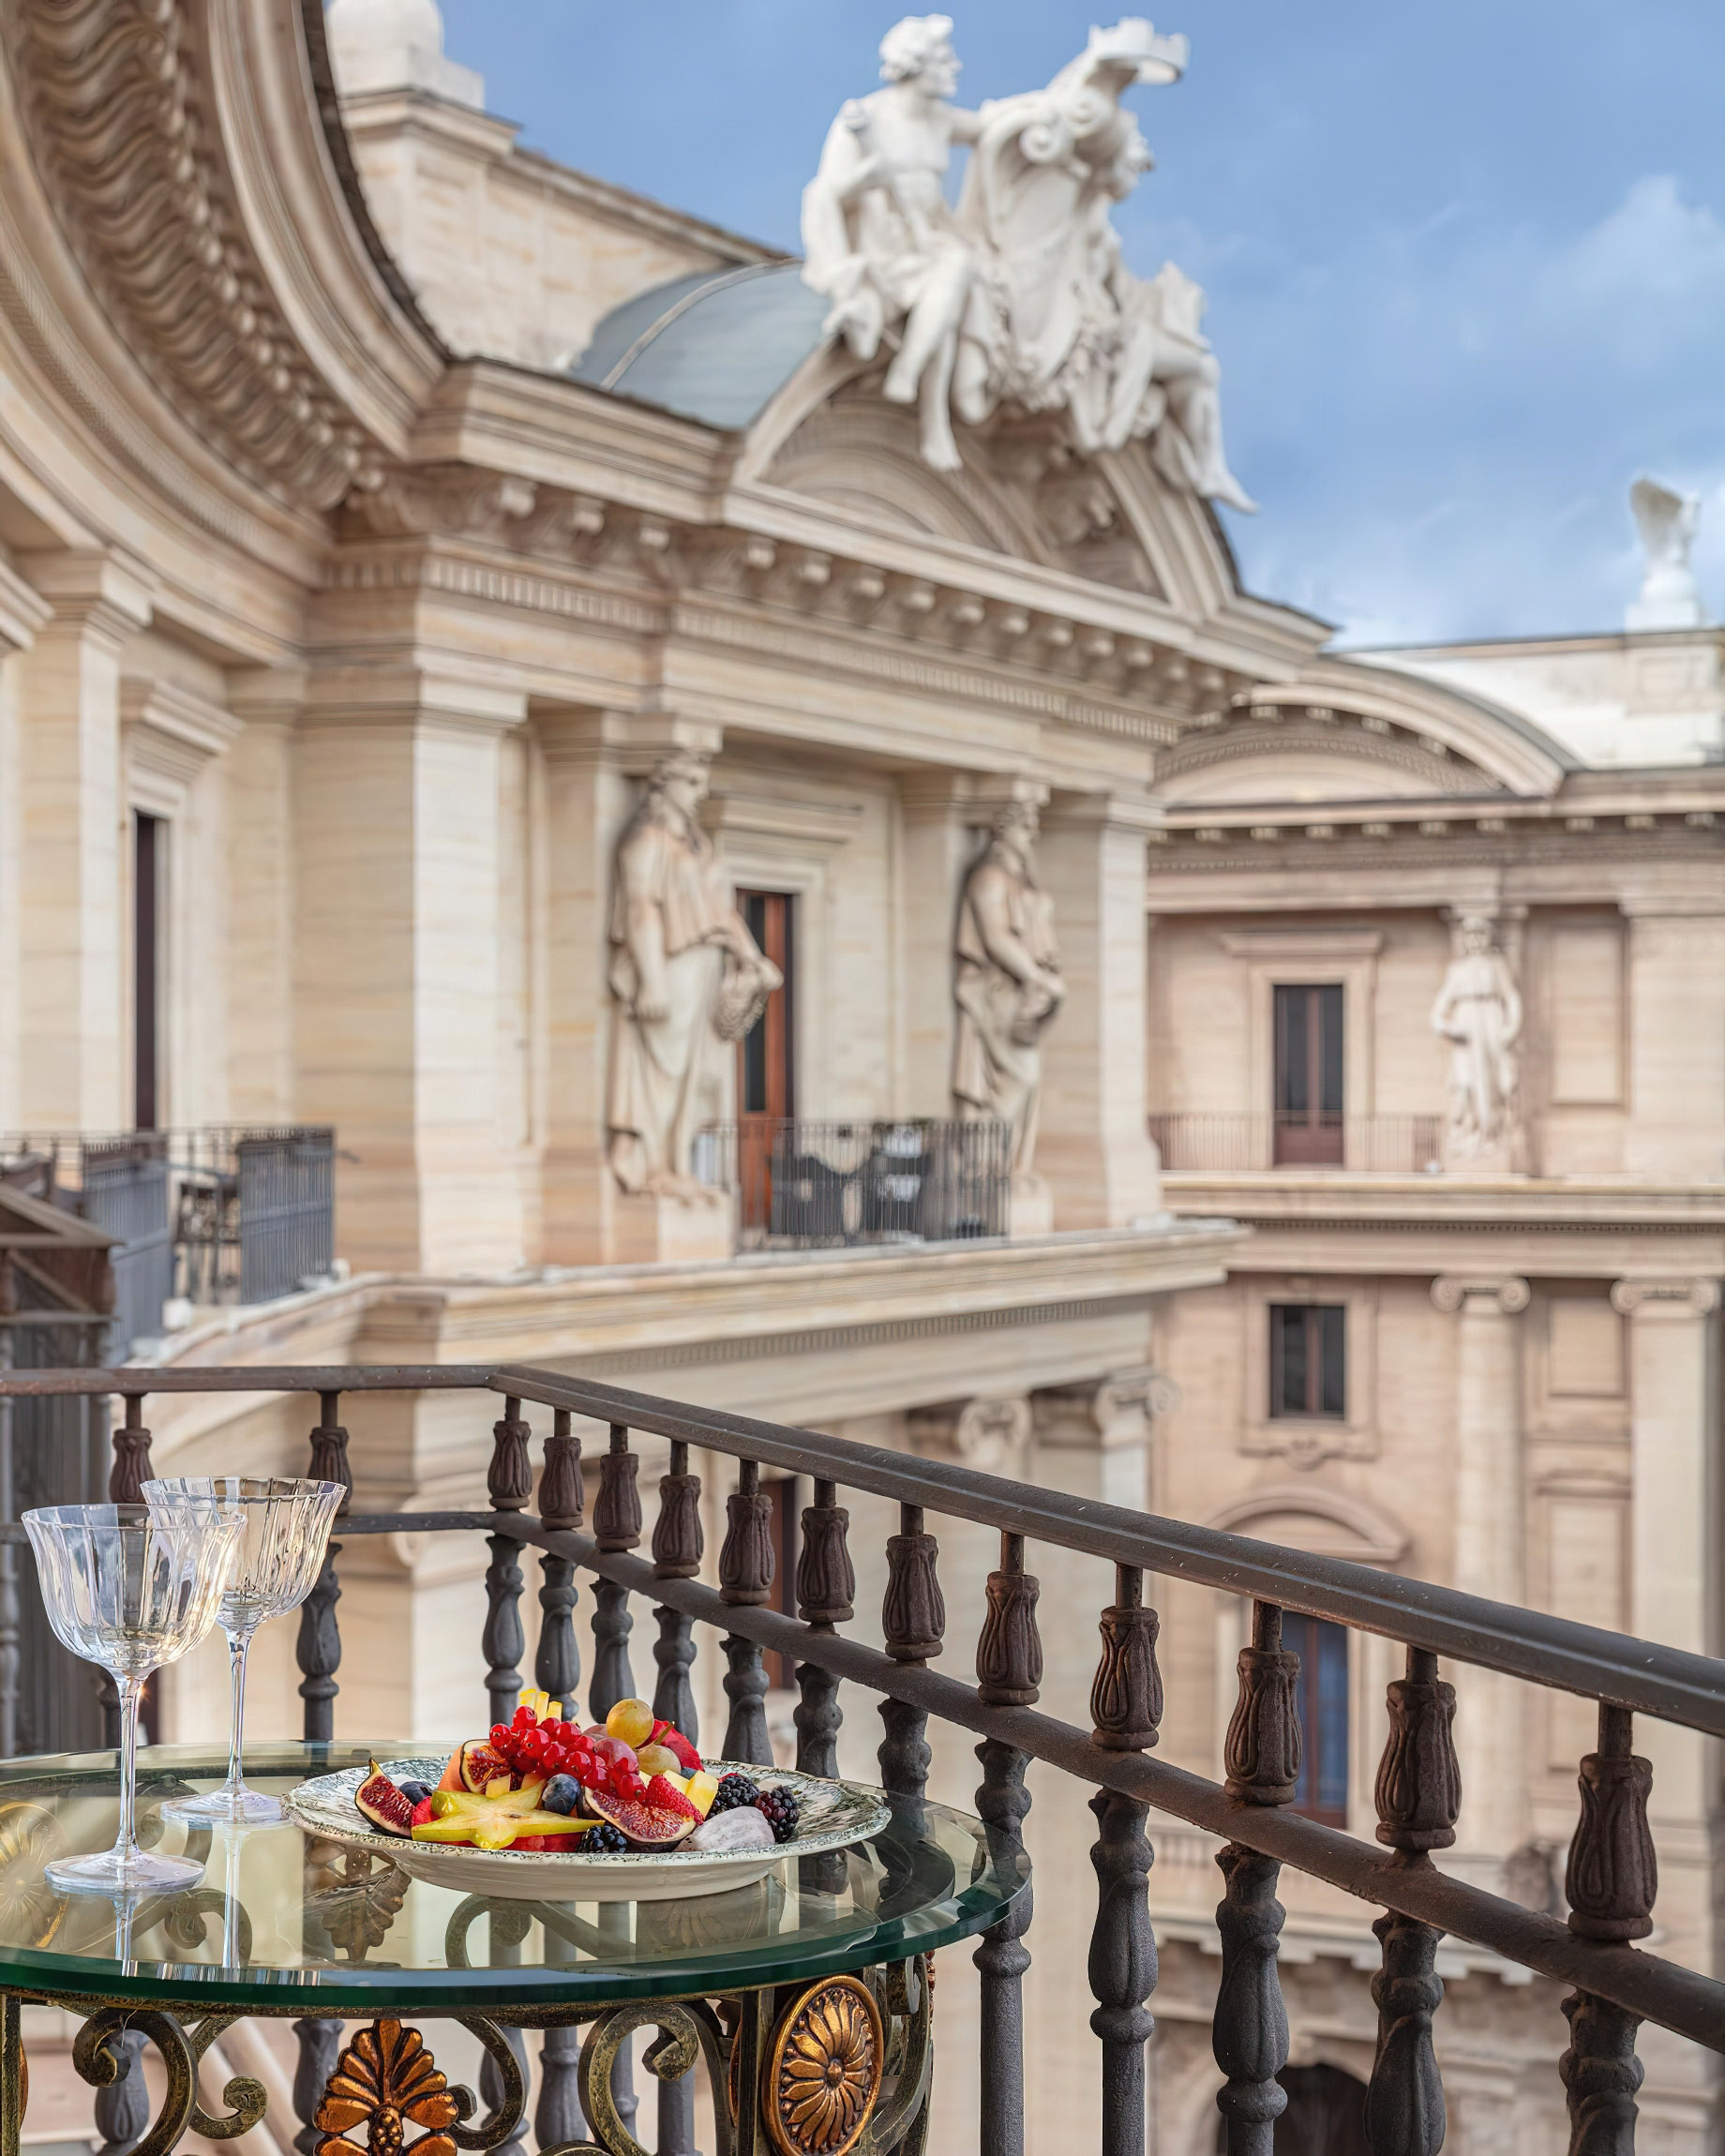 Anantara Palazzo Naiadi Rome Hotel - Rome, Italy - Balcony Dining